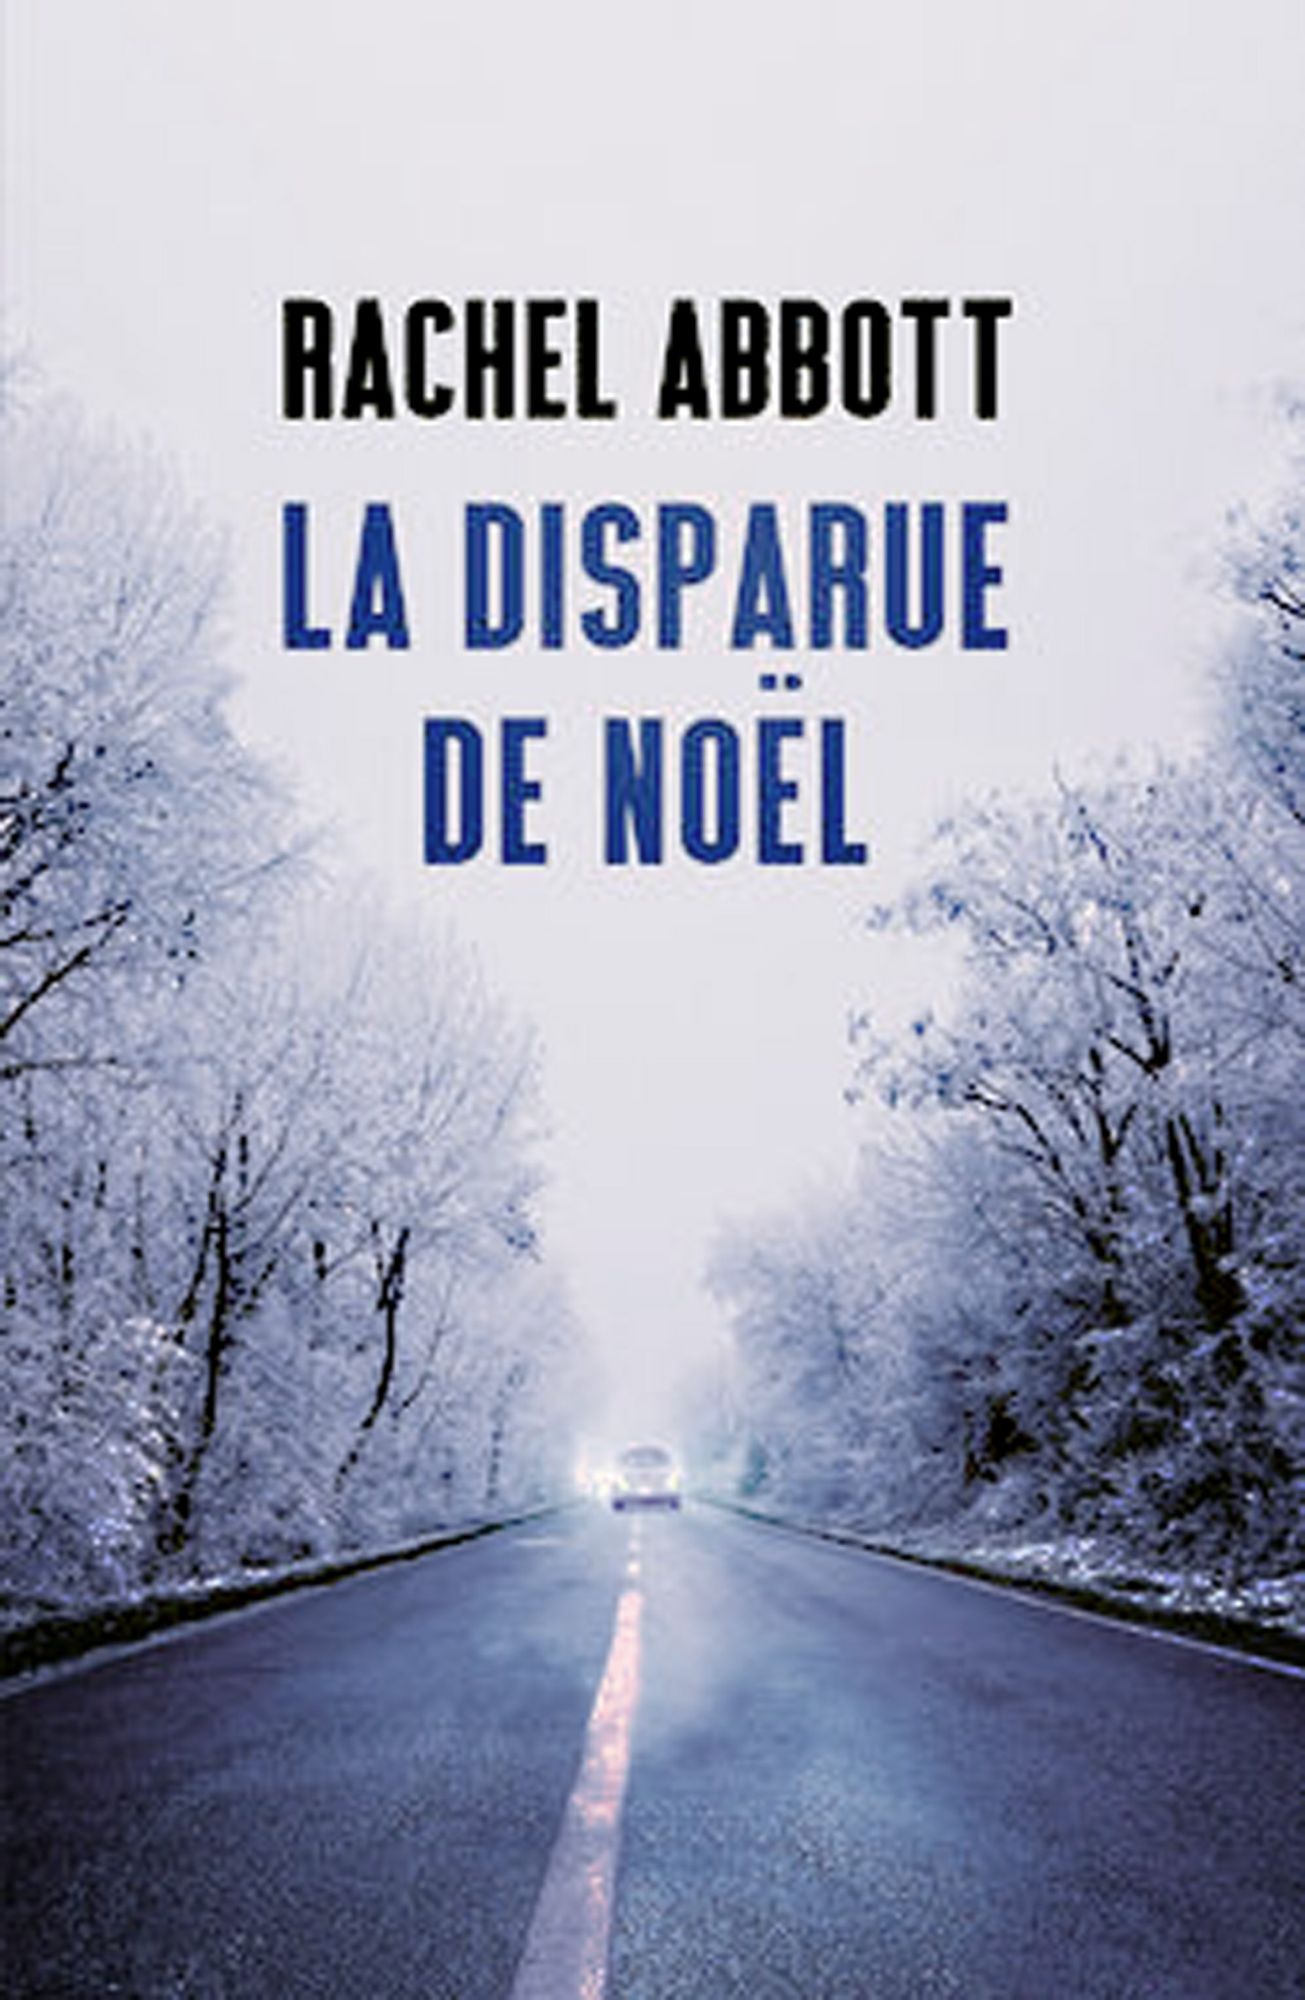 RACHEL ABBOT- LA DISPARUE DE NOEL